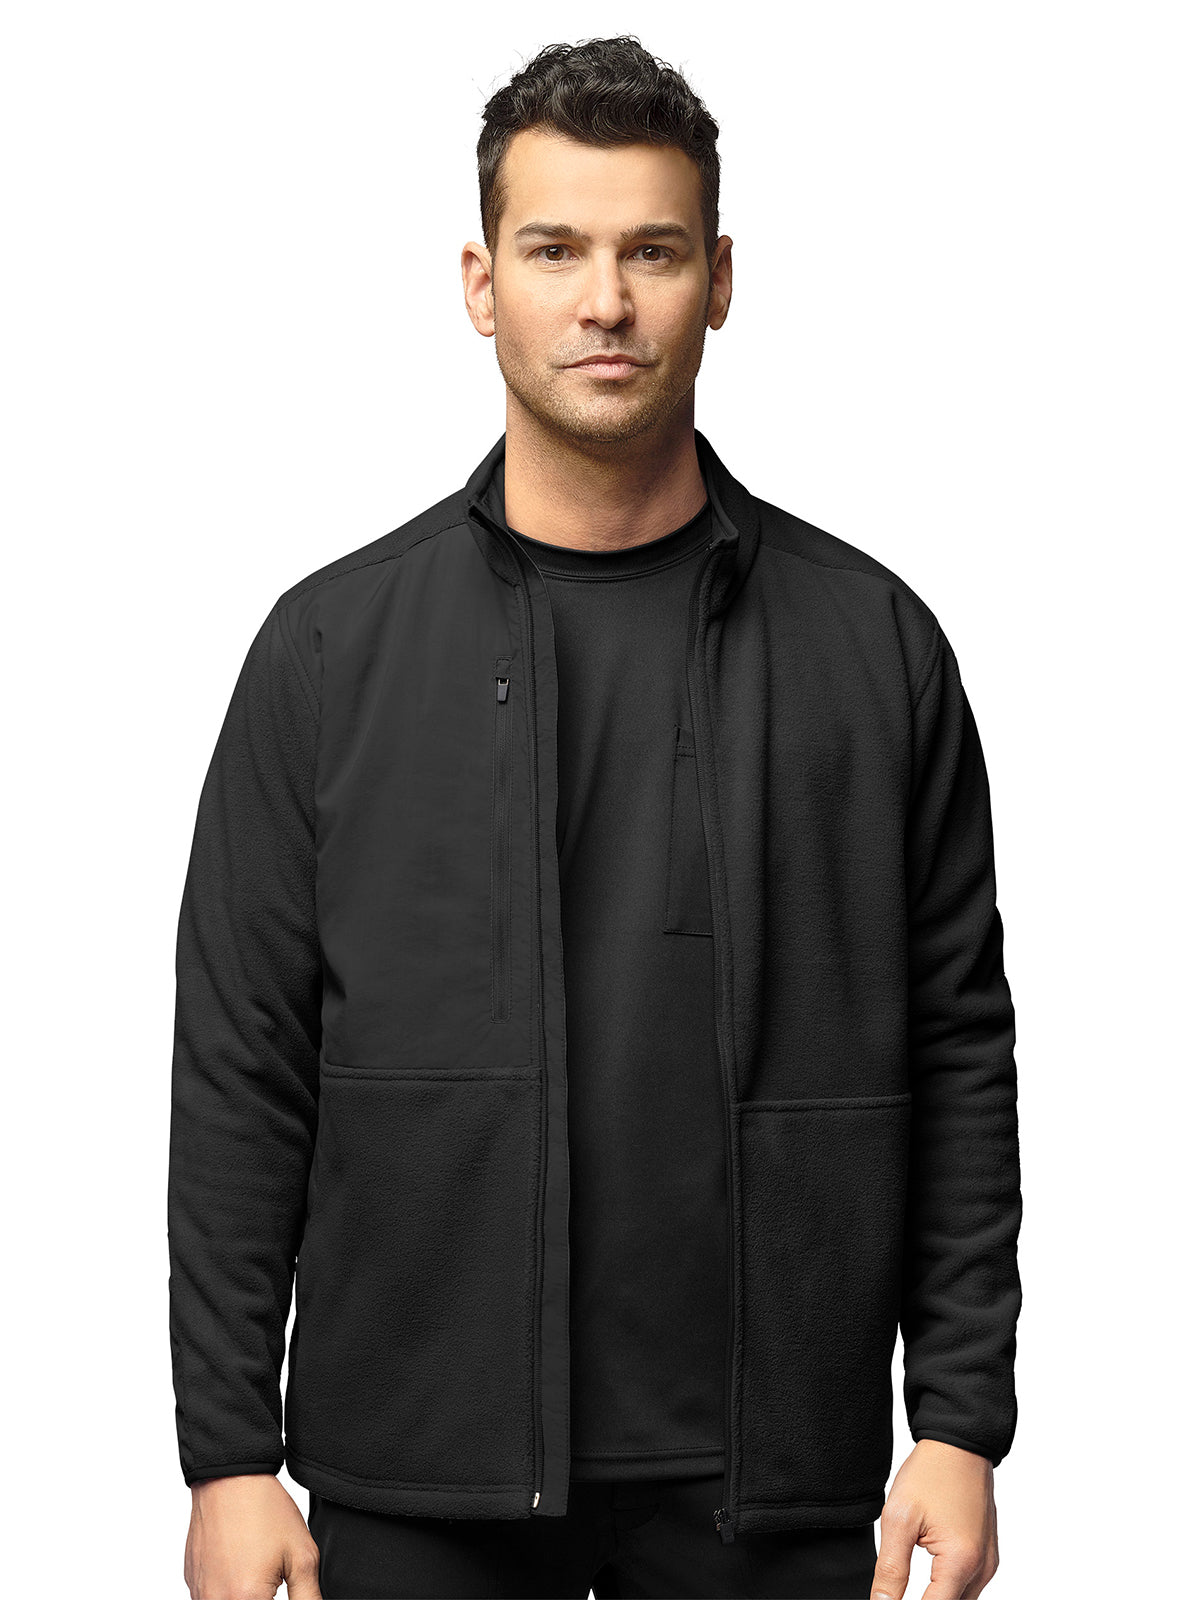 Men's Micro Fleece Zip Jacket